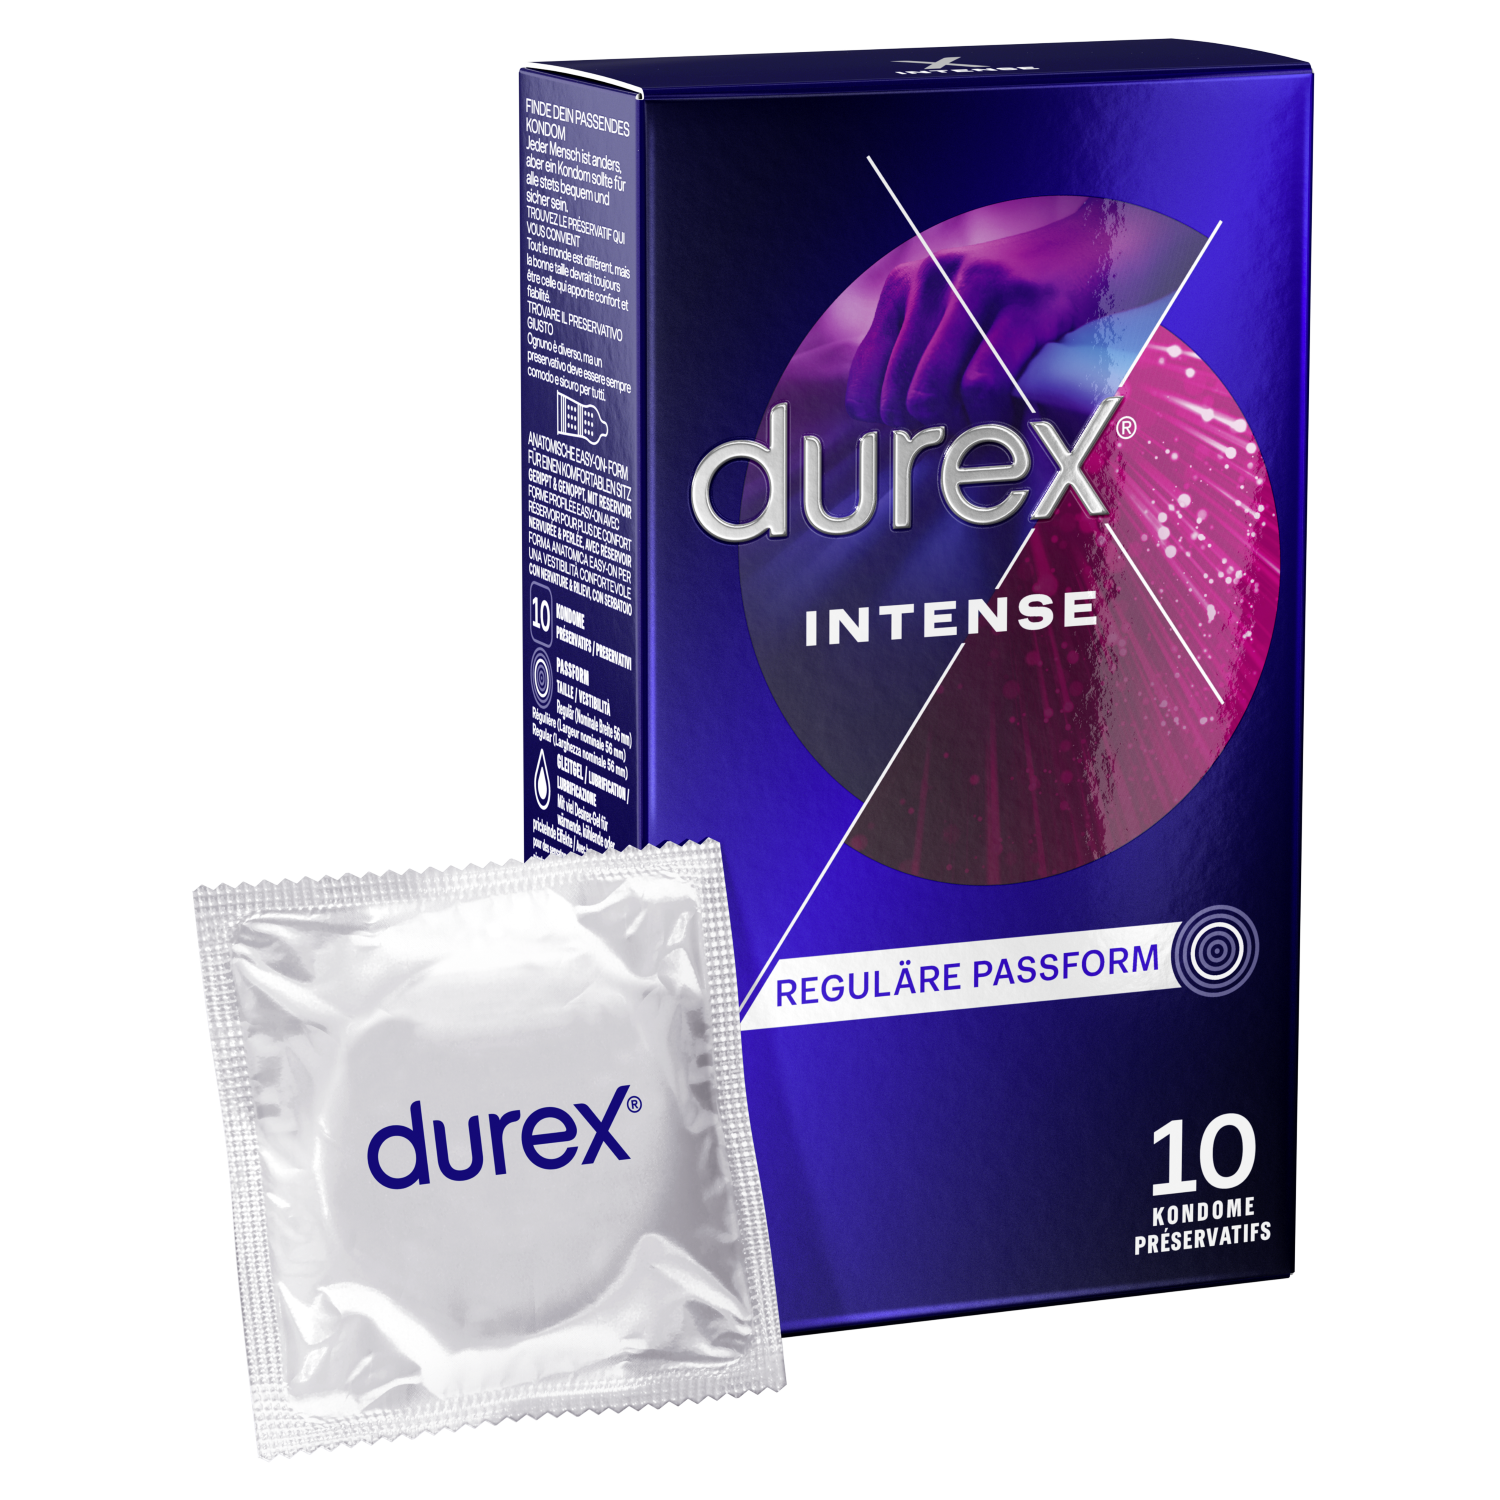 Durex Intense Orgasmic, 10 Kondome